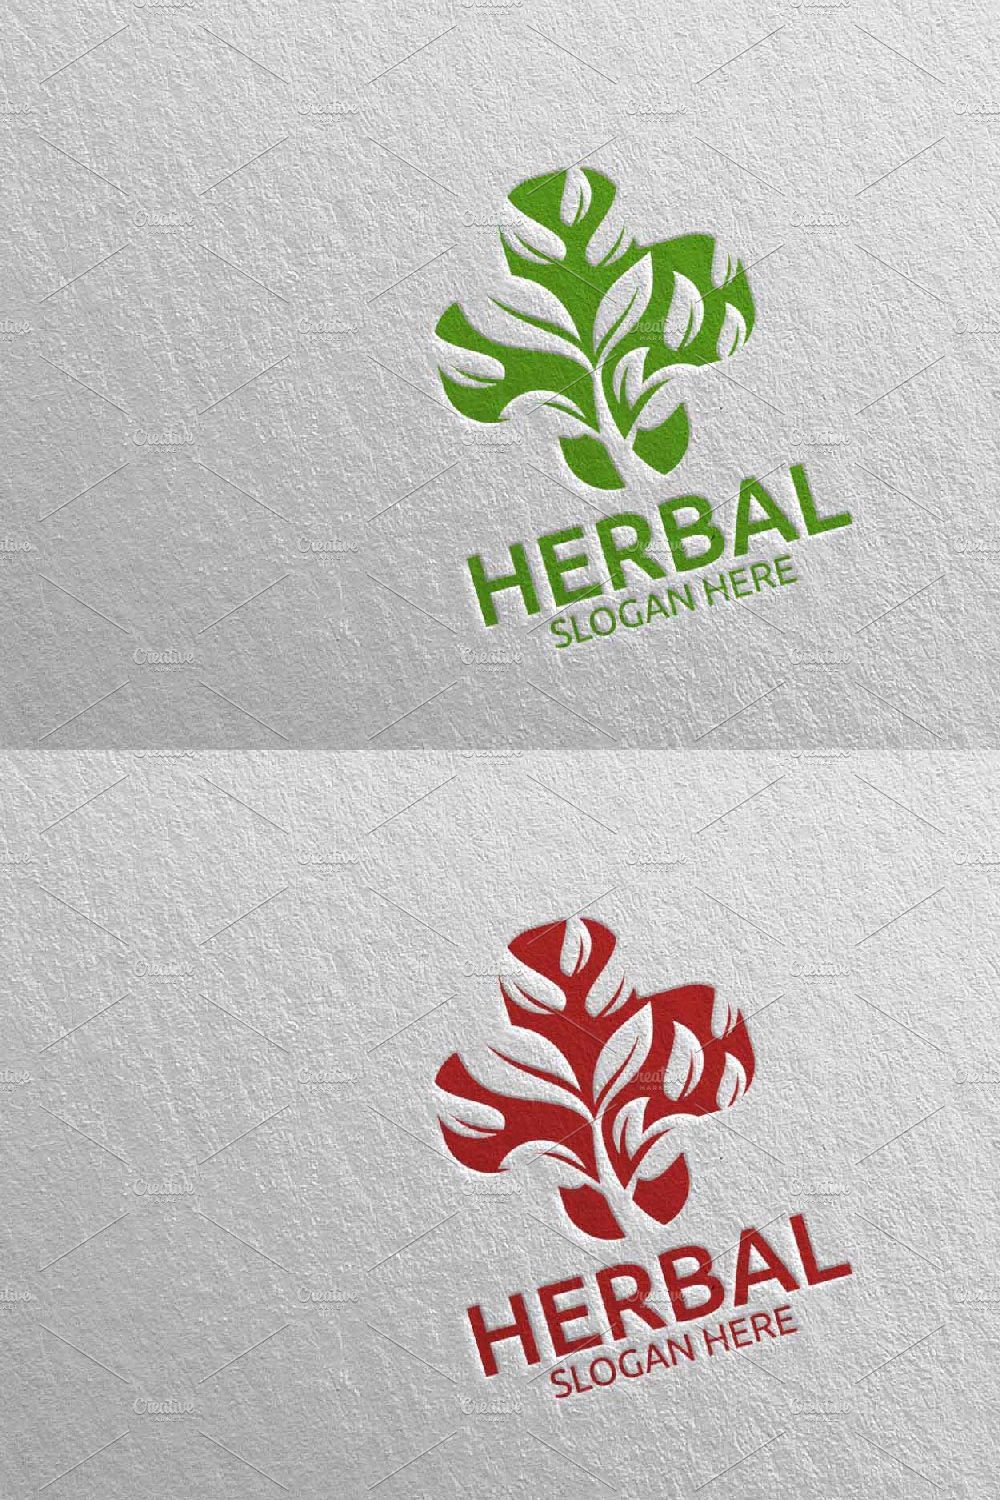 Natural Medical Hospital Logo 115 pinterest preview image.